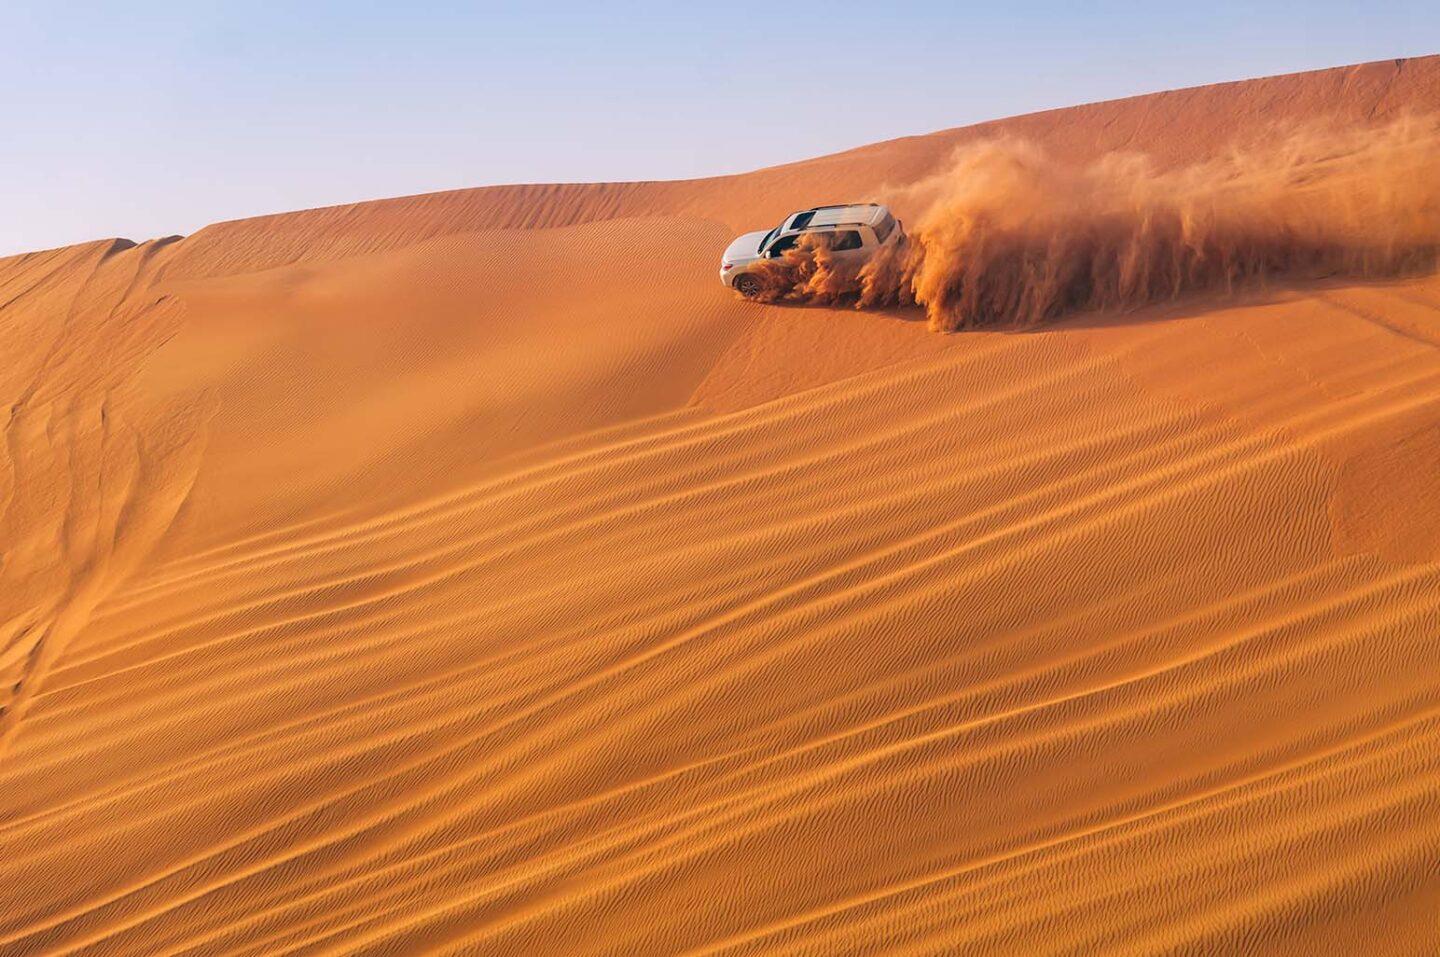 Abu Dhabi Morning Desert Safari